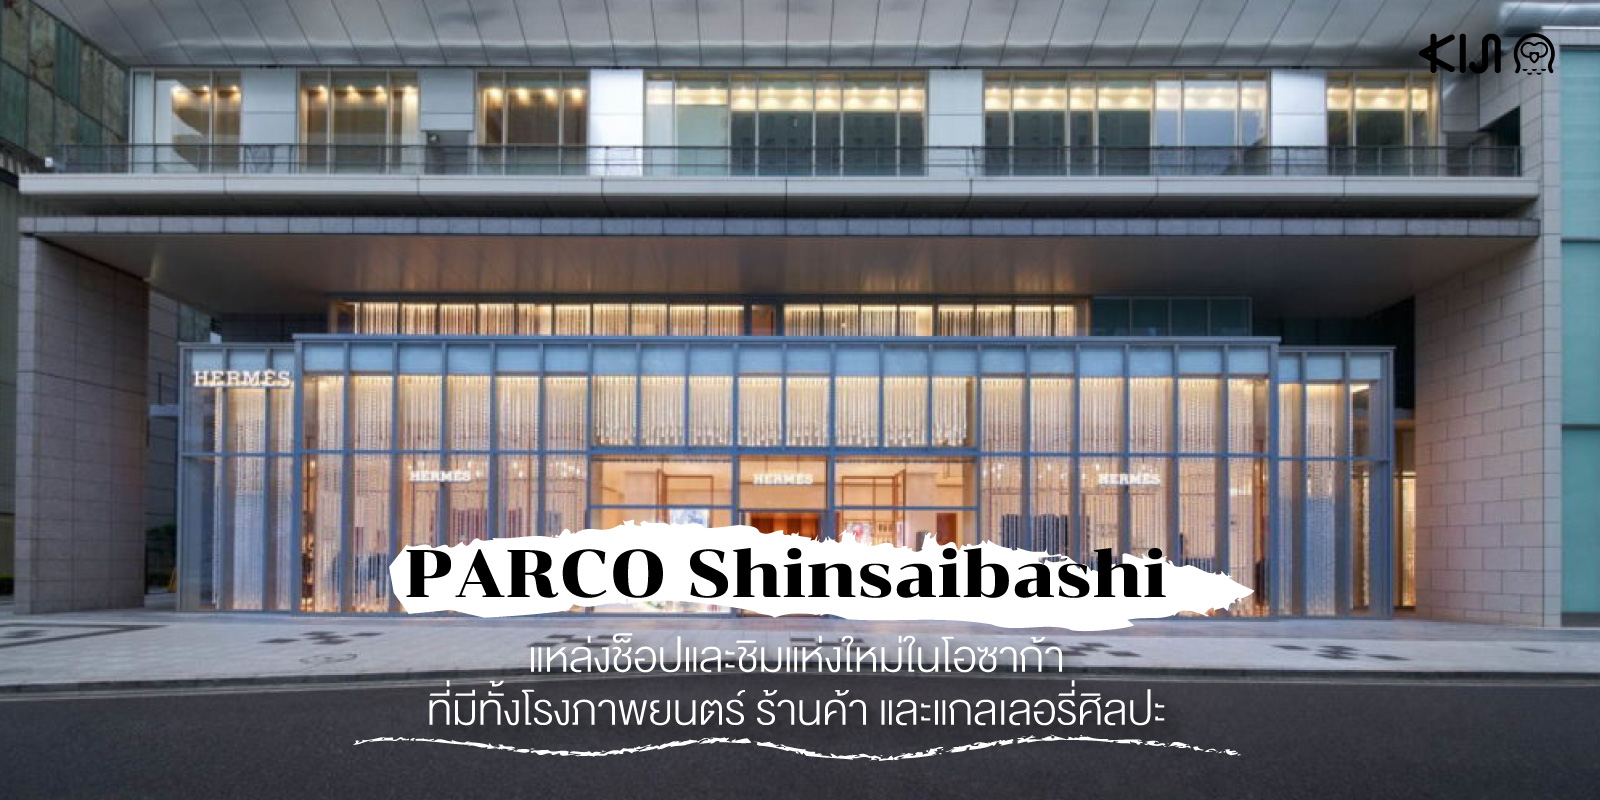 PARCO Shinsaibashi แหล่งช็อปปิ้งที่รวบรวมร้านค้าชั้นนำไว้กว่า 170 ร้าน